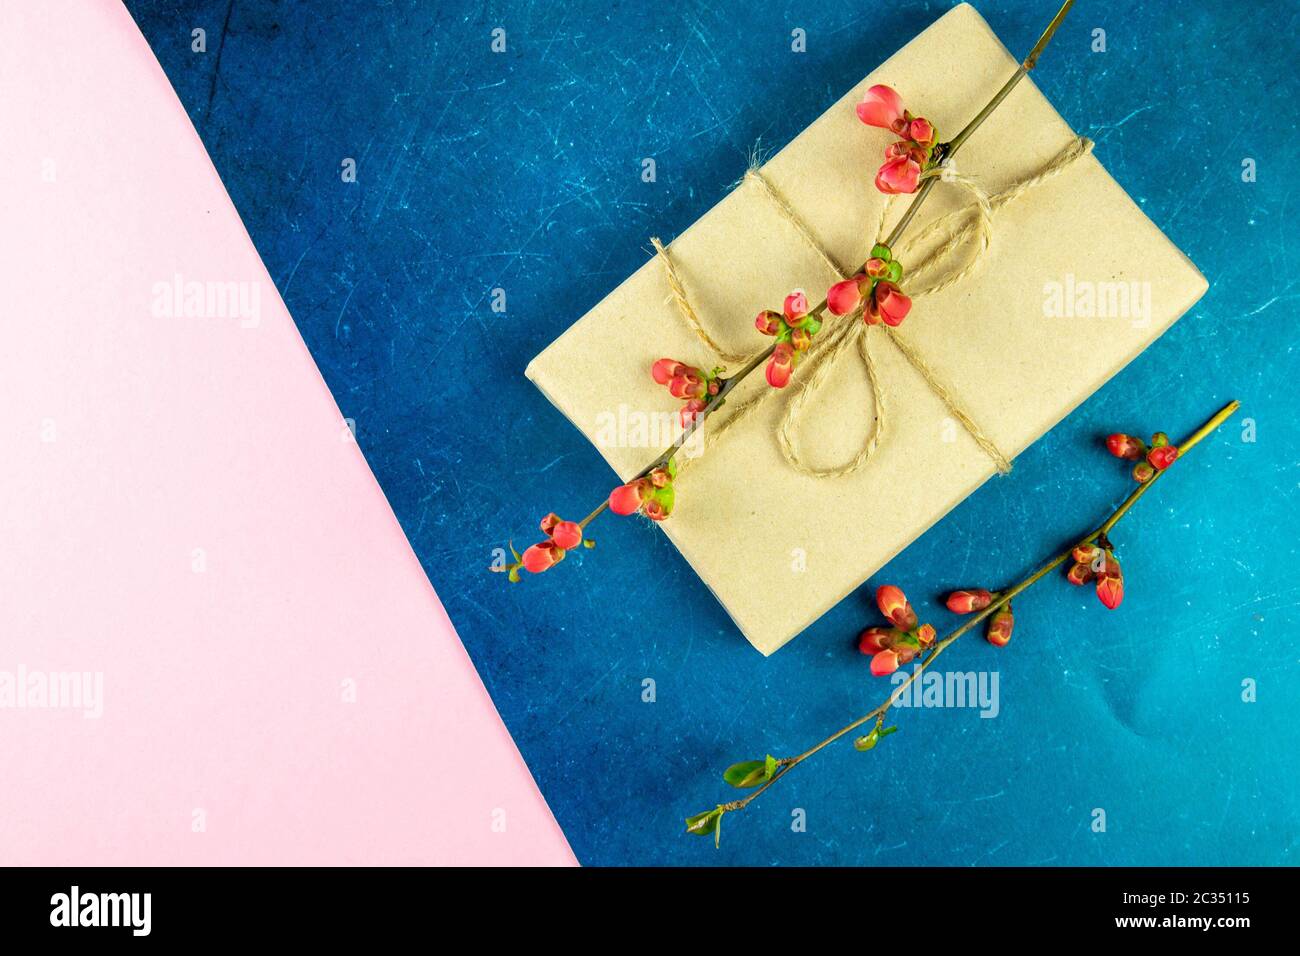 Geschenk mit einem rosa Blütenzweig auf einem blau-rosa Hintergrund. Stockfoto